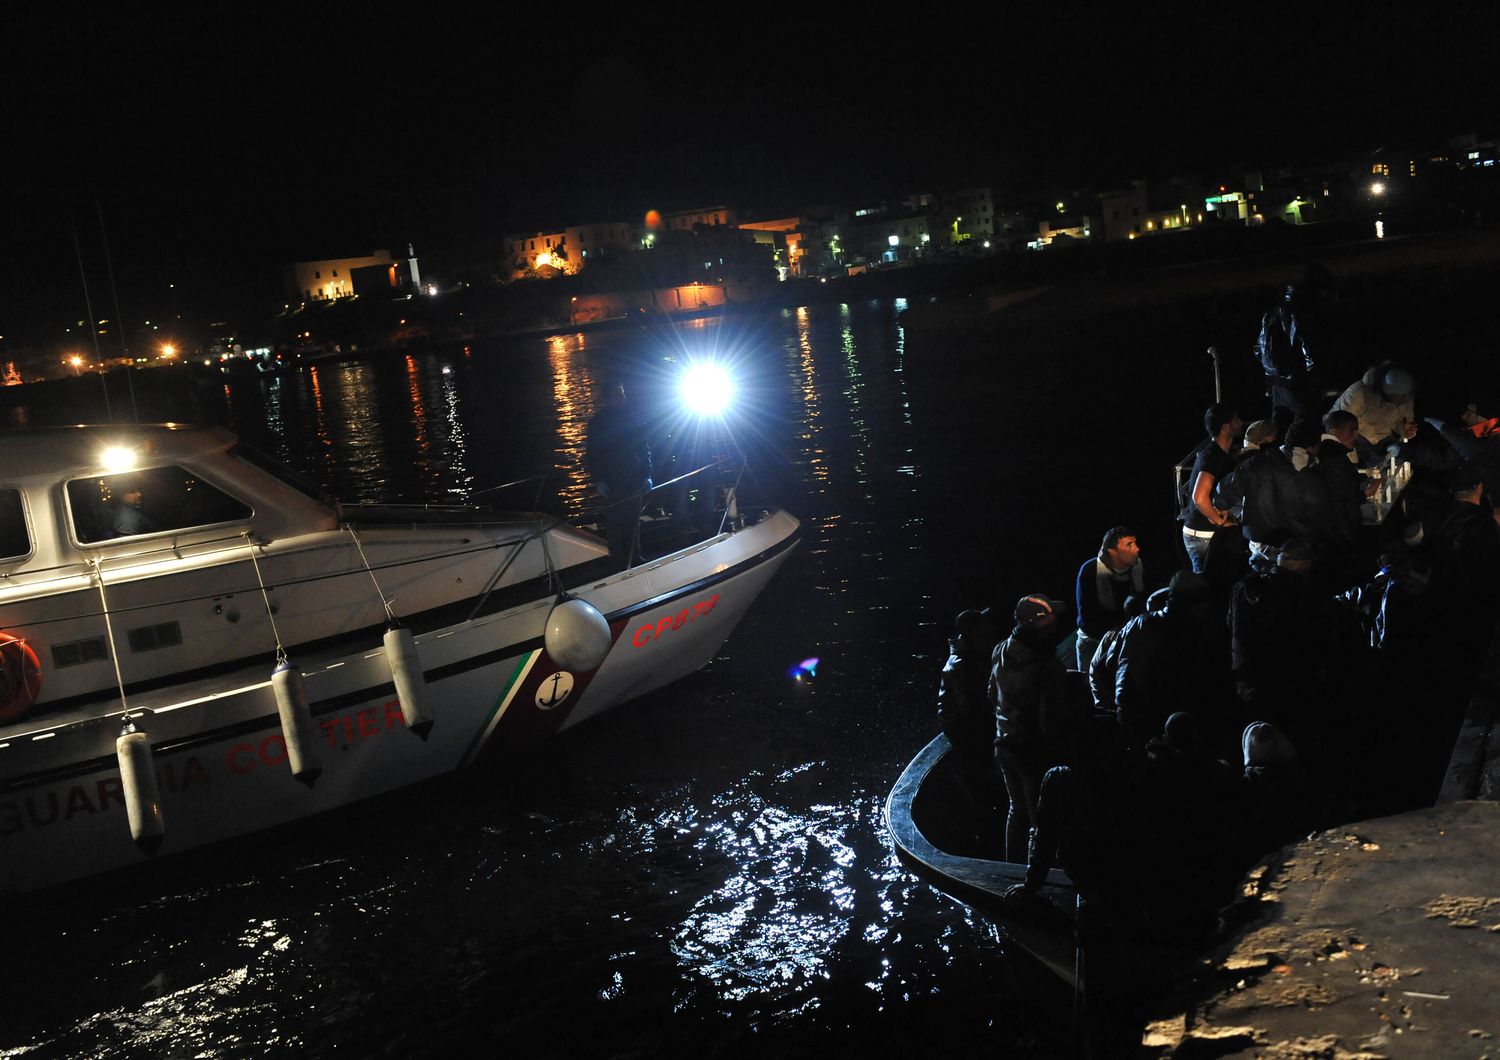 Lampedusa, porto, nella foto alcuni sbarchi al molo di notte, motovedetta della guardia costiera